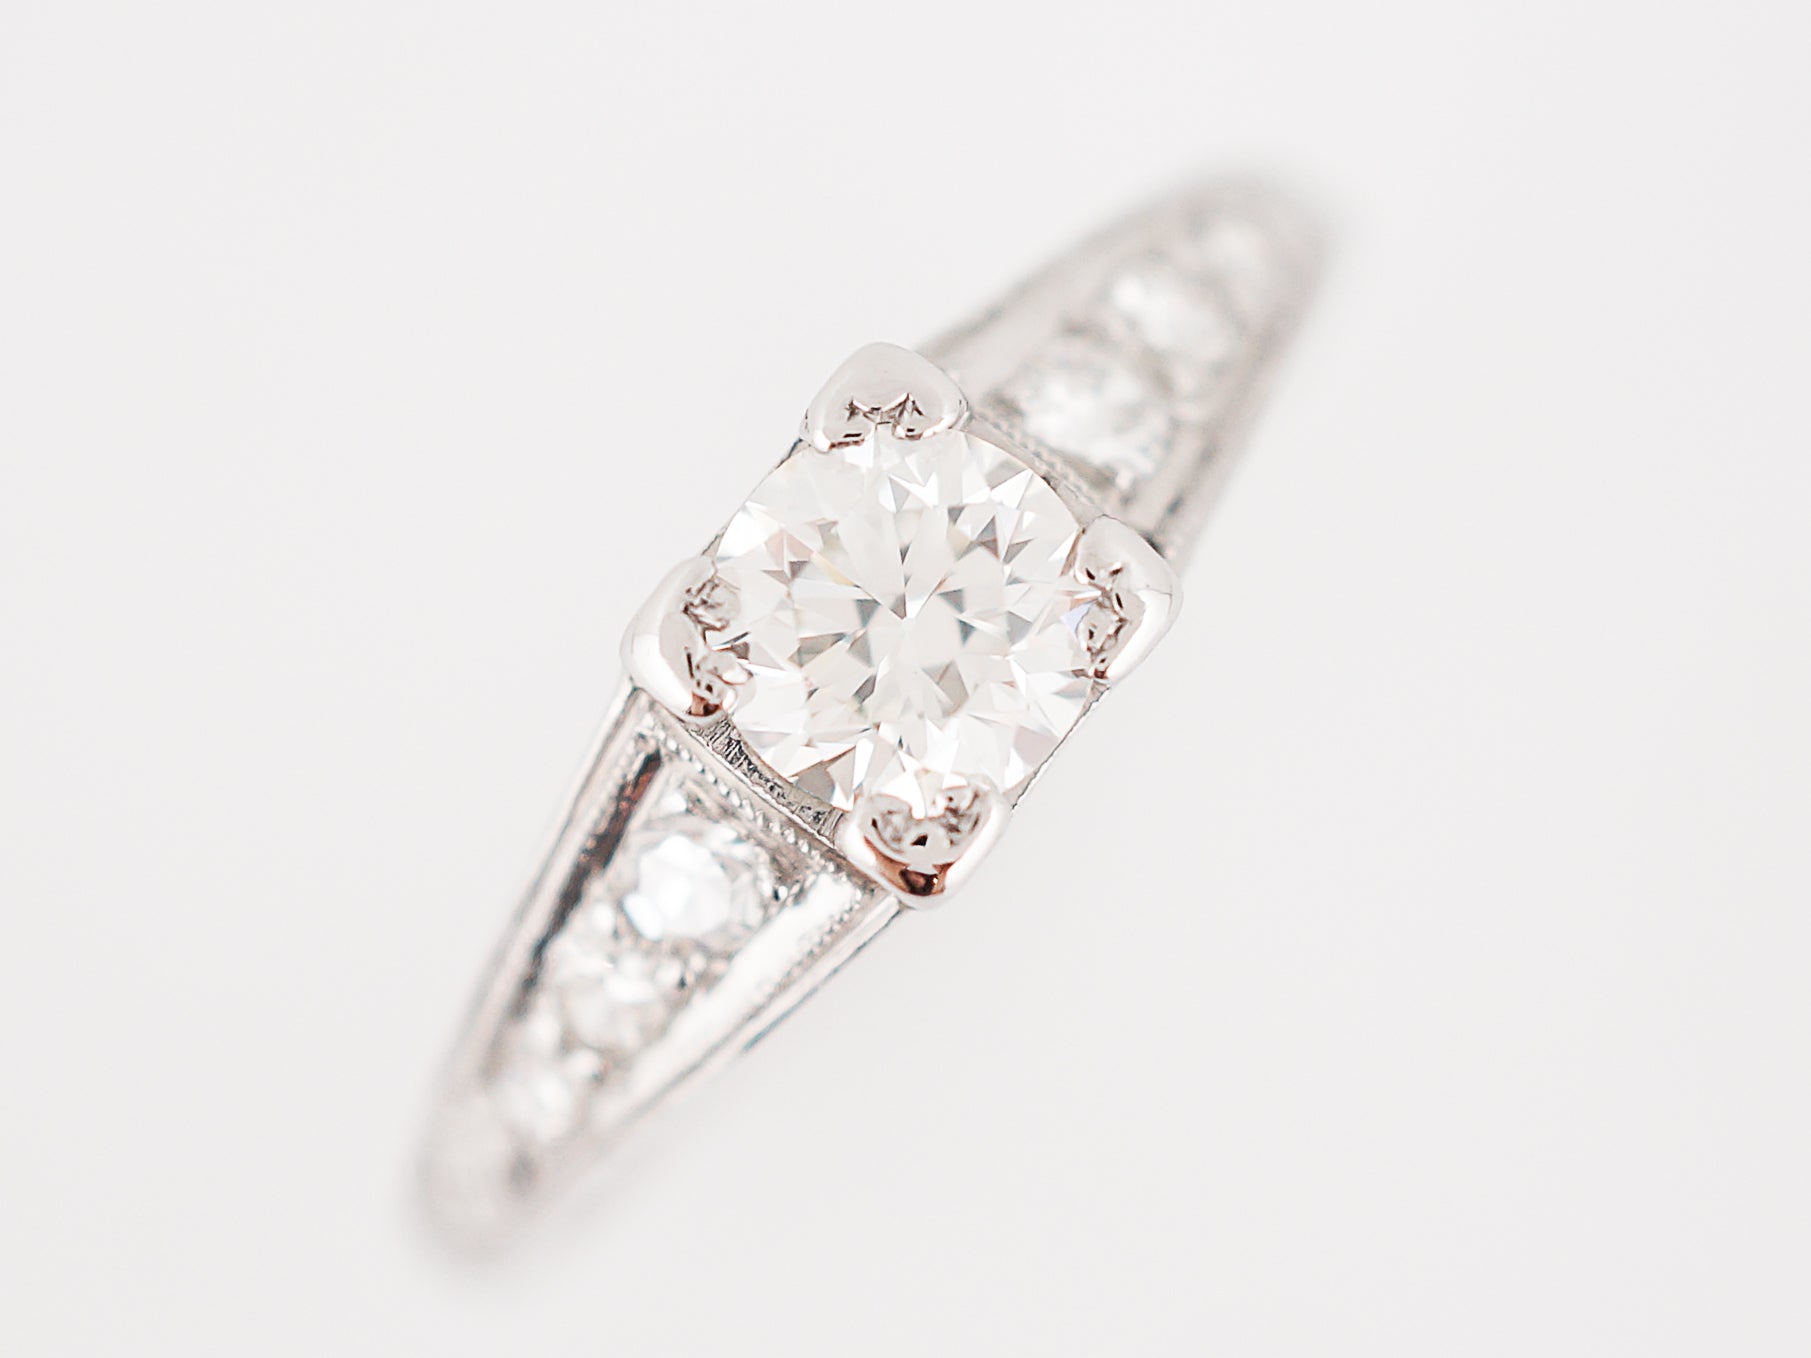 Perfect Art Deco Diamond Engagement Ring in Platinum